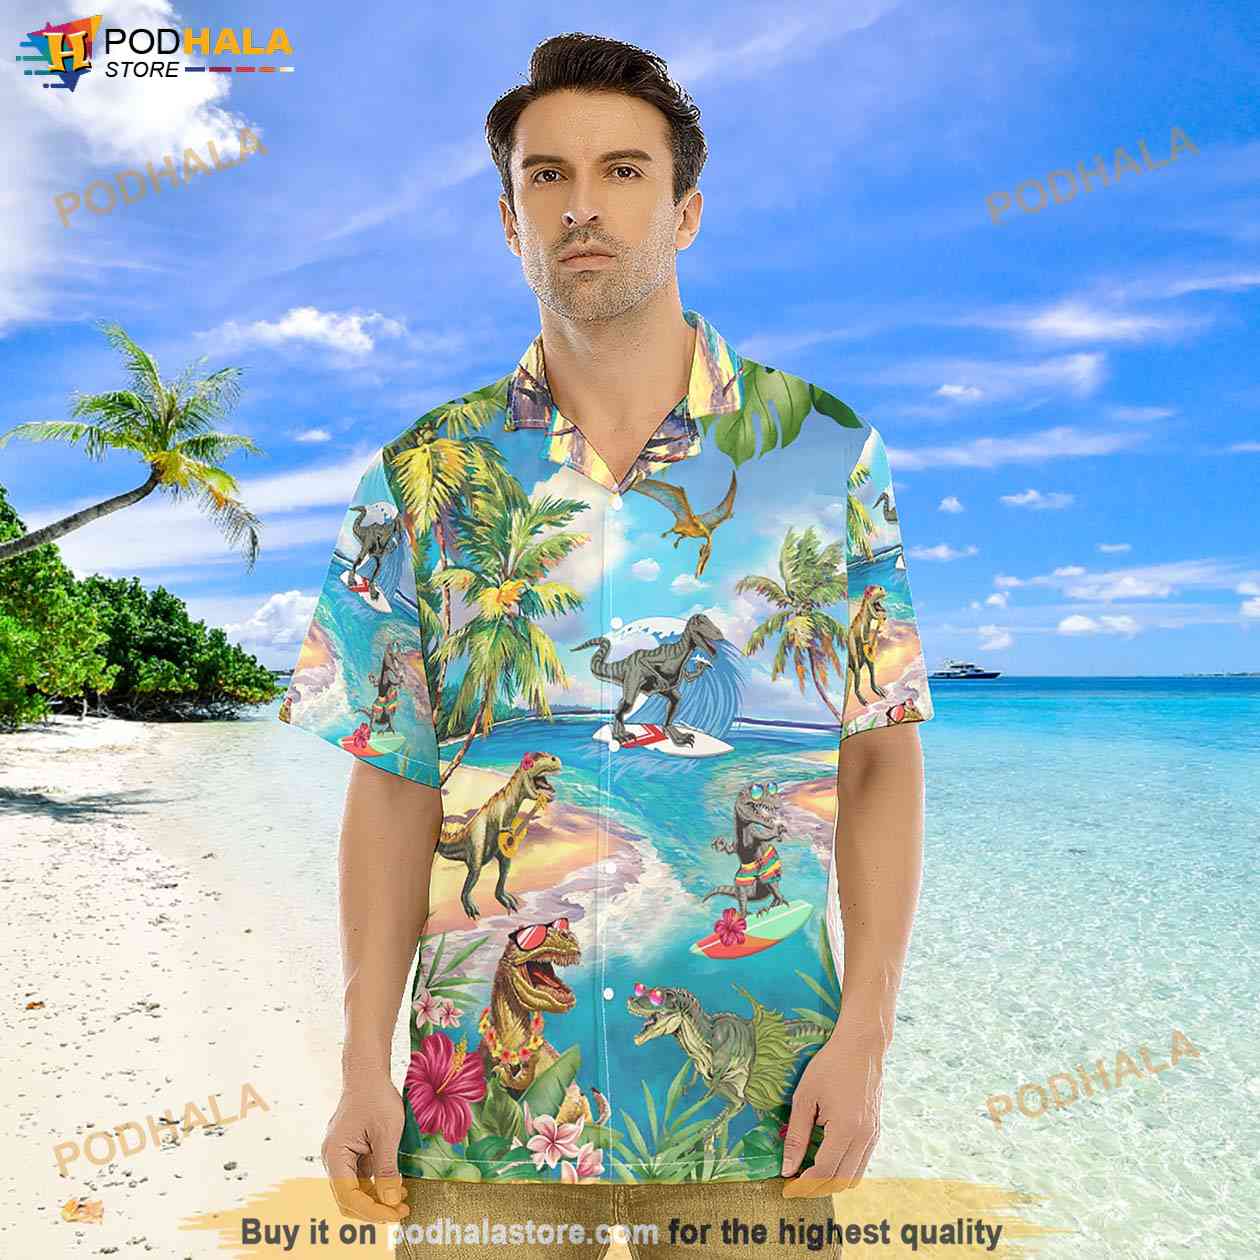 Ny Yankees Short Sleeve Aloha Hawaiian Shirt And Shorts Beach Gift